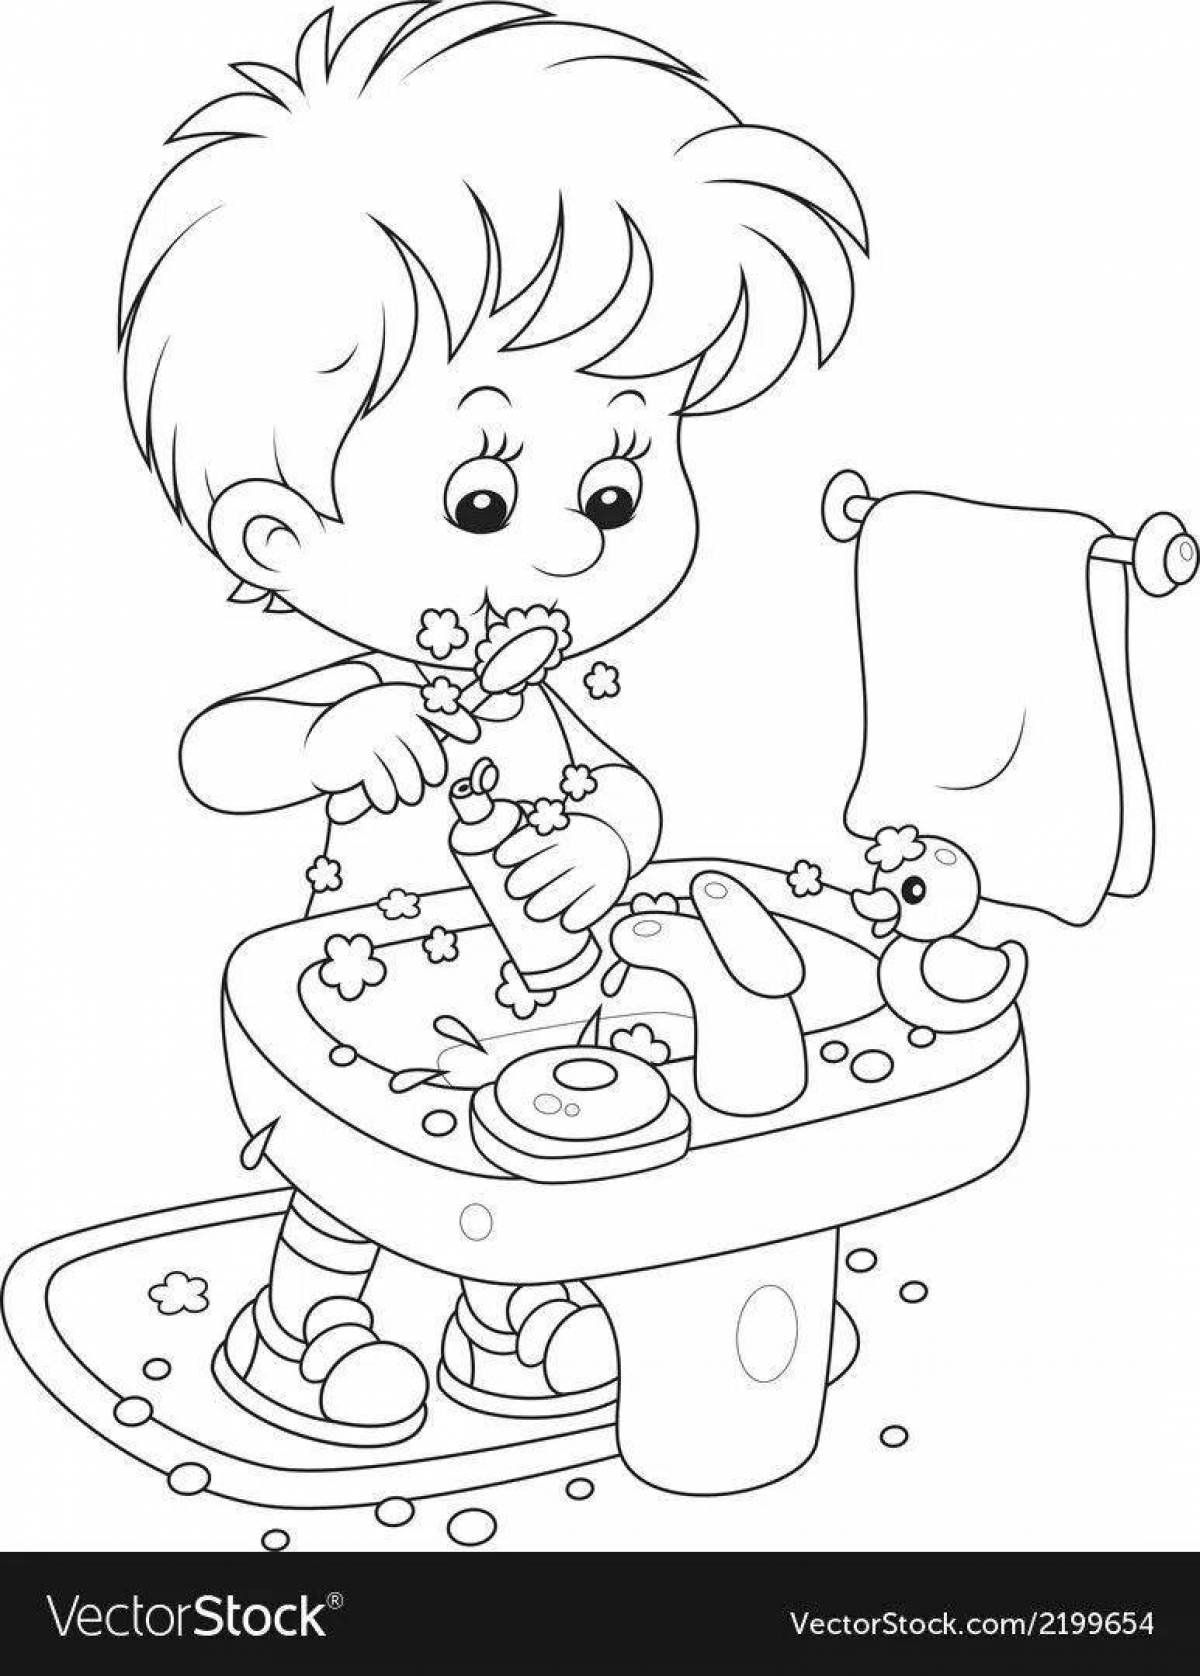 Раскраска Мальчик чистит зубы перед зеркалом